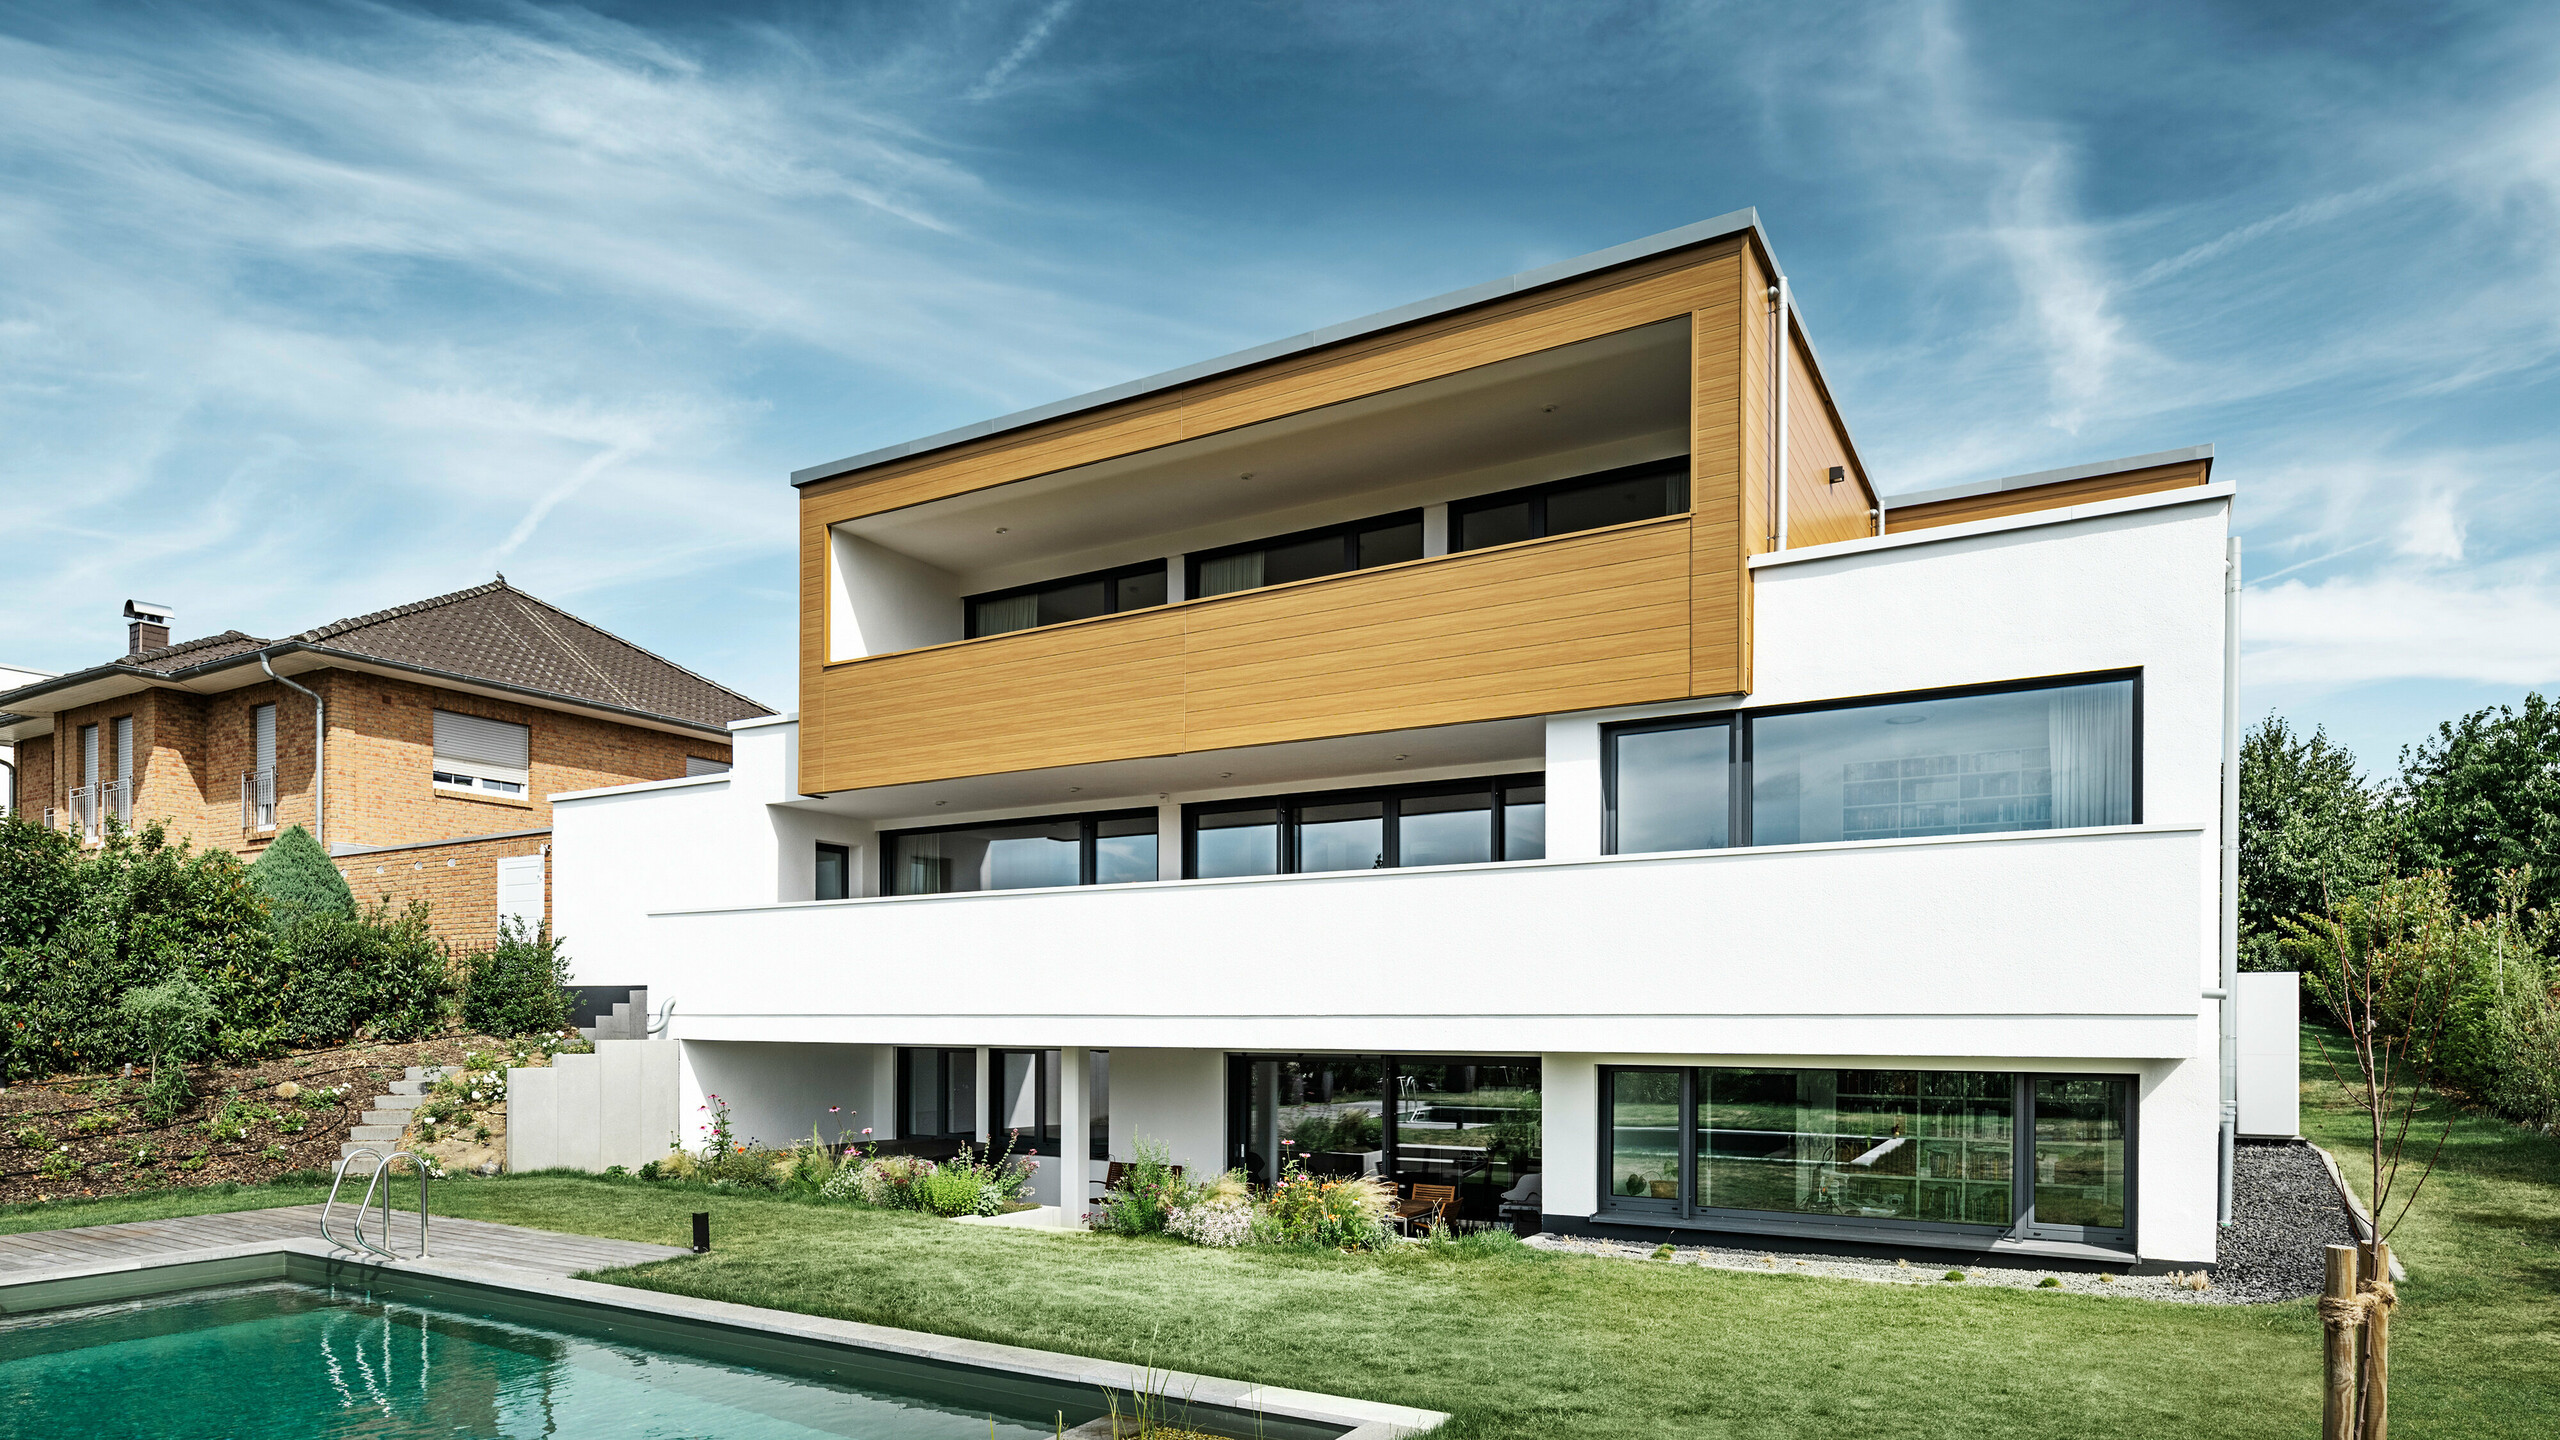 Tył nowoczesnego domu jednorodzinnego w Usingen w Niemczech. W dolnej części zdjęcia widać zielony trawnik, basen i młode drzewo ogrodowe. Przyciągający wzrok dom ma białą podstawę budynku wykonaną z otynkowanej fasady, aluminiową fasadę na piętrze wykonaną z PREFA Sidings w kolorze dąb naturalny i duże powierzchnie okienne z ramą w kolorze antracytu. Sąsiedni dom z ceglaną fasadą jest widoczny z daleka po lewej stronie zdjęcia.